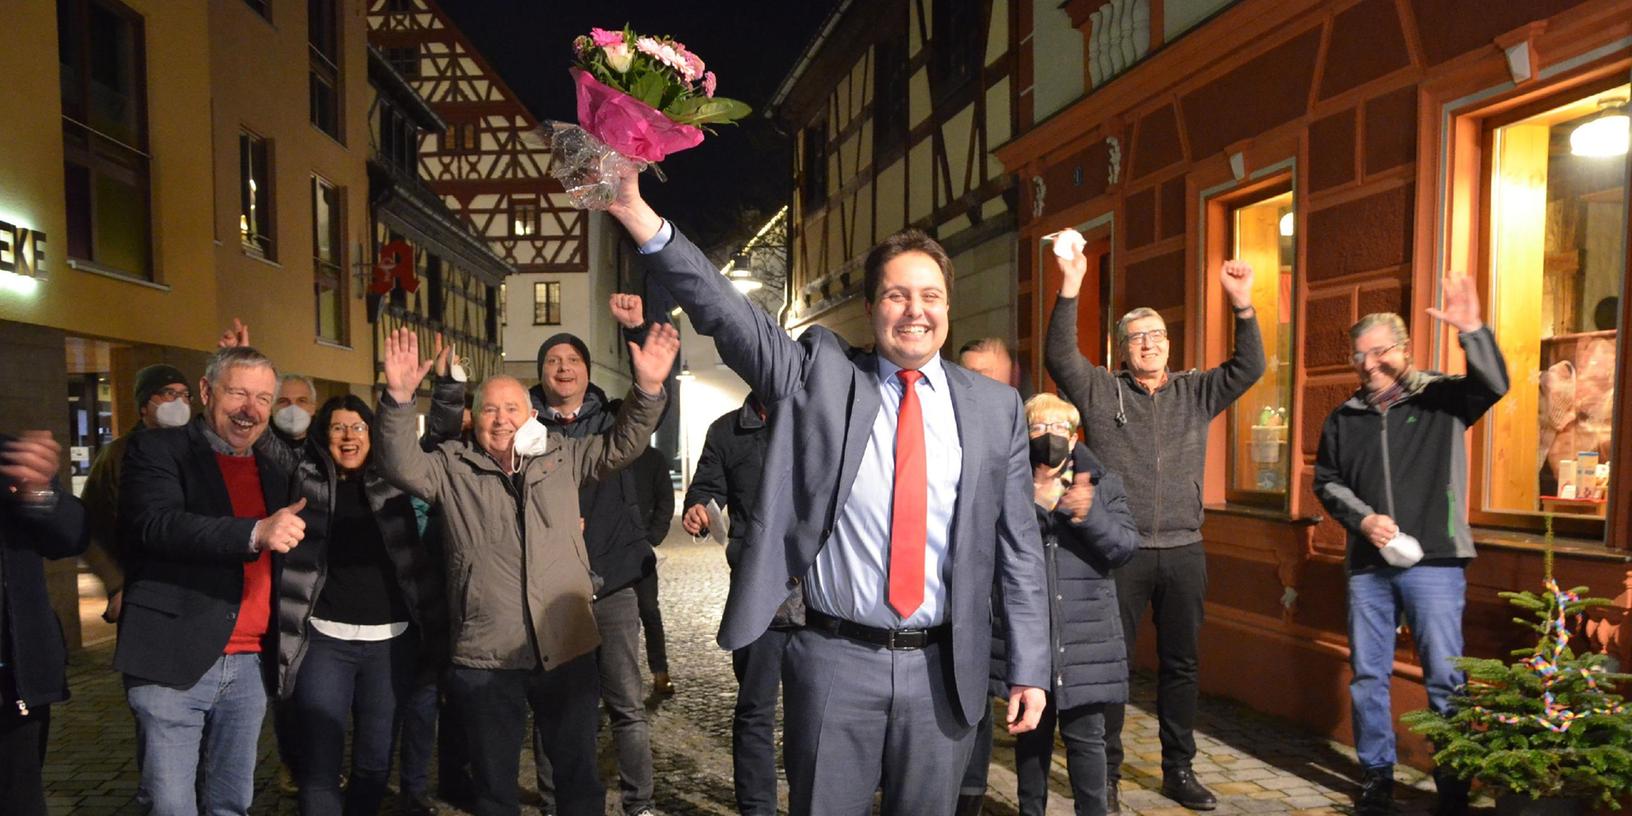 "So sehen Sieger aus": Anhänger gratulieren Andreas Buckreus zu seiner Wahl als Bürgermeister der Kreisstadt Roth.